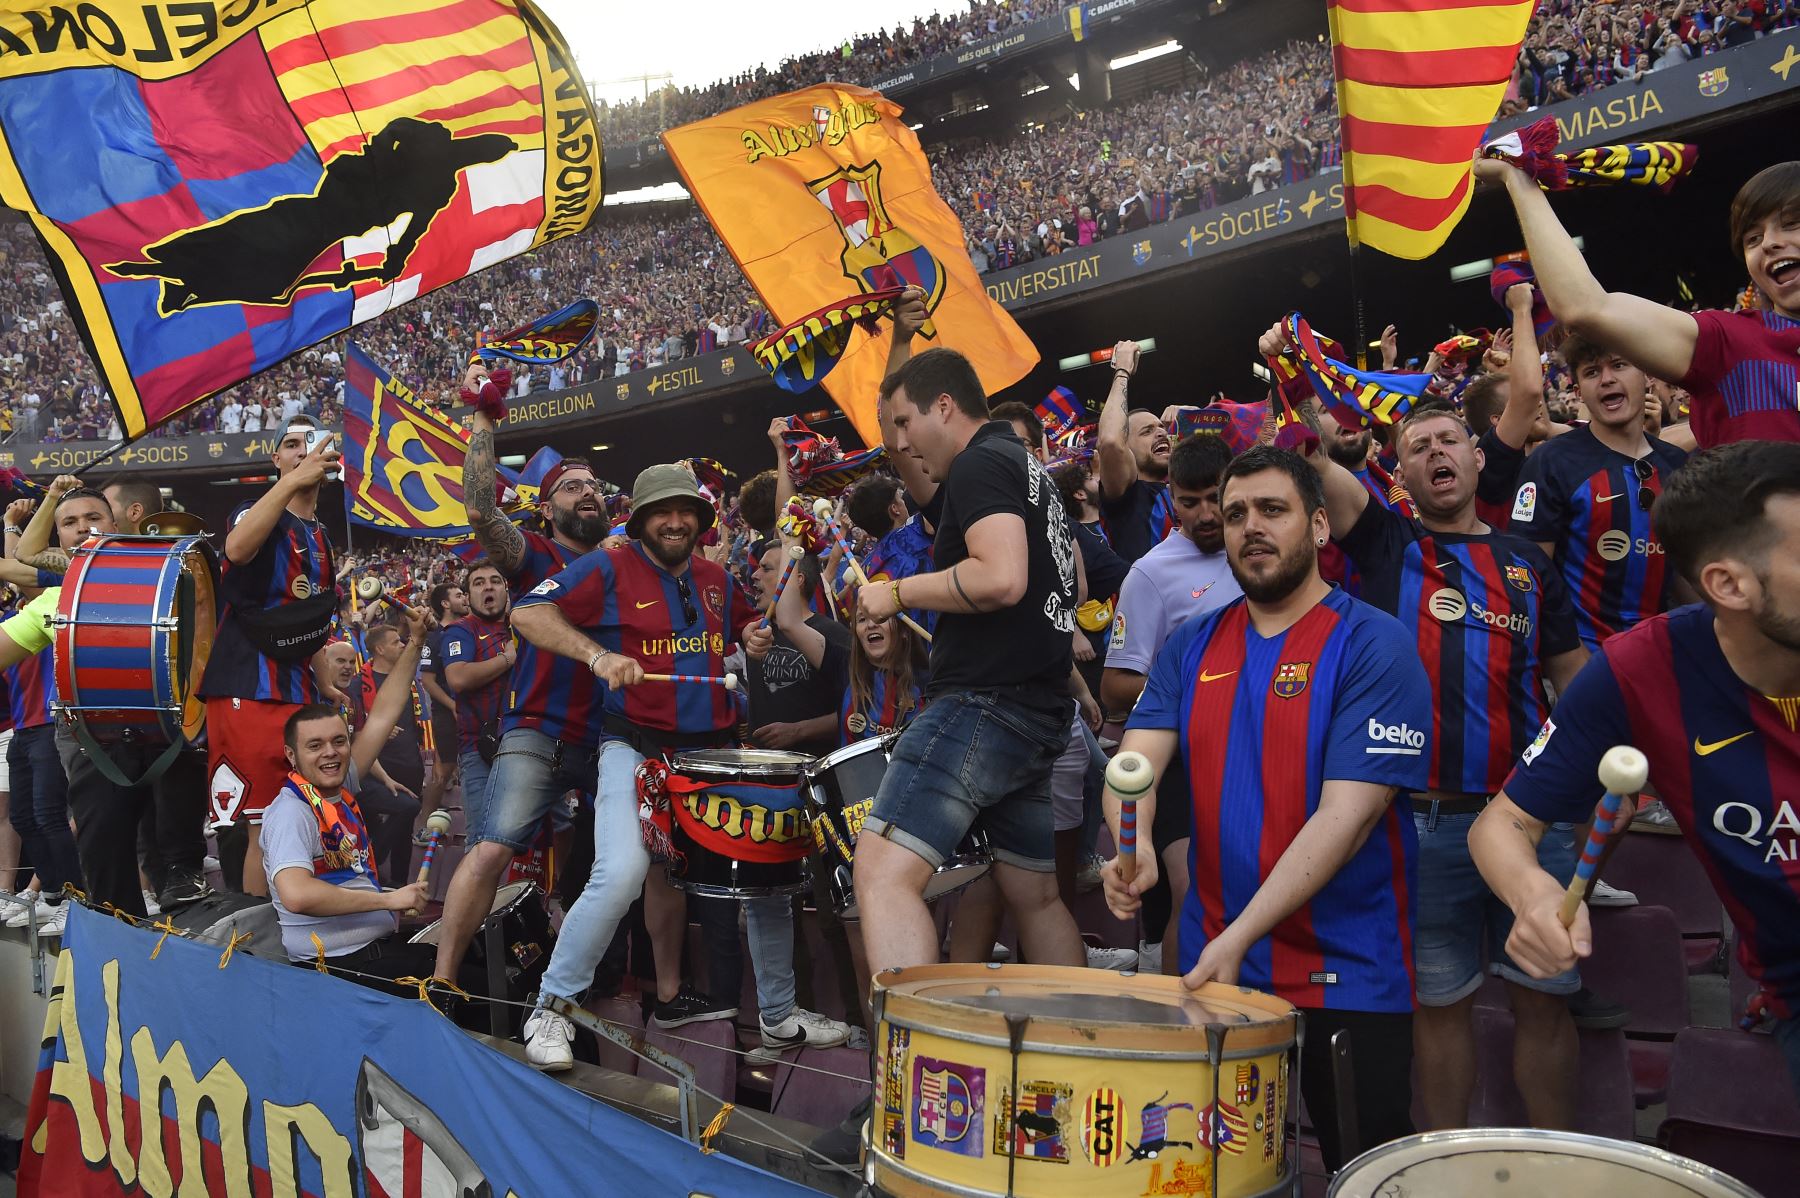 La afición celebra durante el partido de fútbol de la liga española entre el FC Barcelona y el RCD Mallorca, el último partido que se celebra en el estadio del Camp Nou antes del inicio de las obras de construcción del nuevo estadio del Camp Nou de Barcelona. Foto:ANDINA/AFP